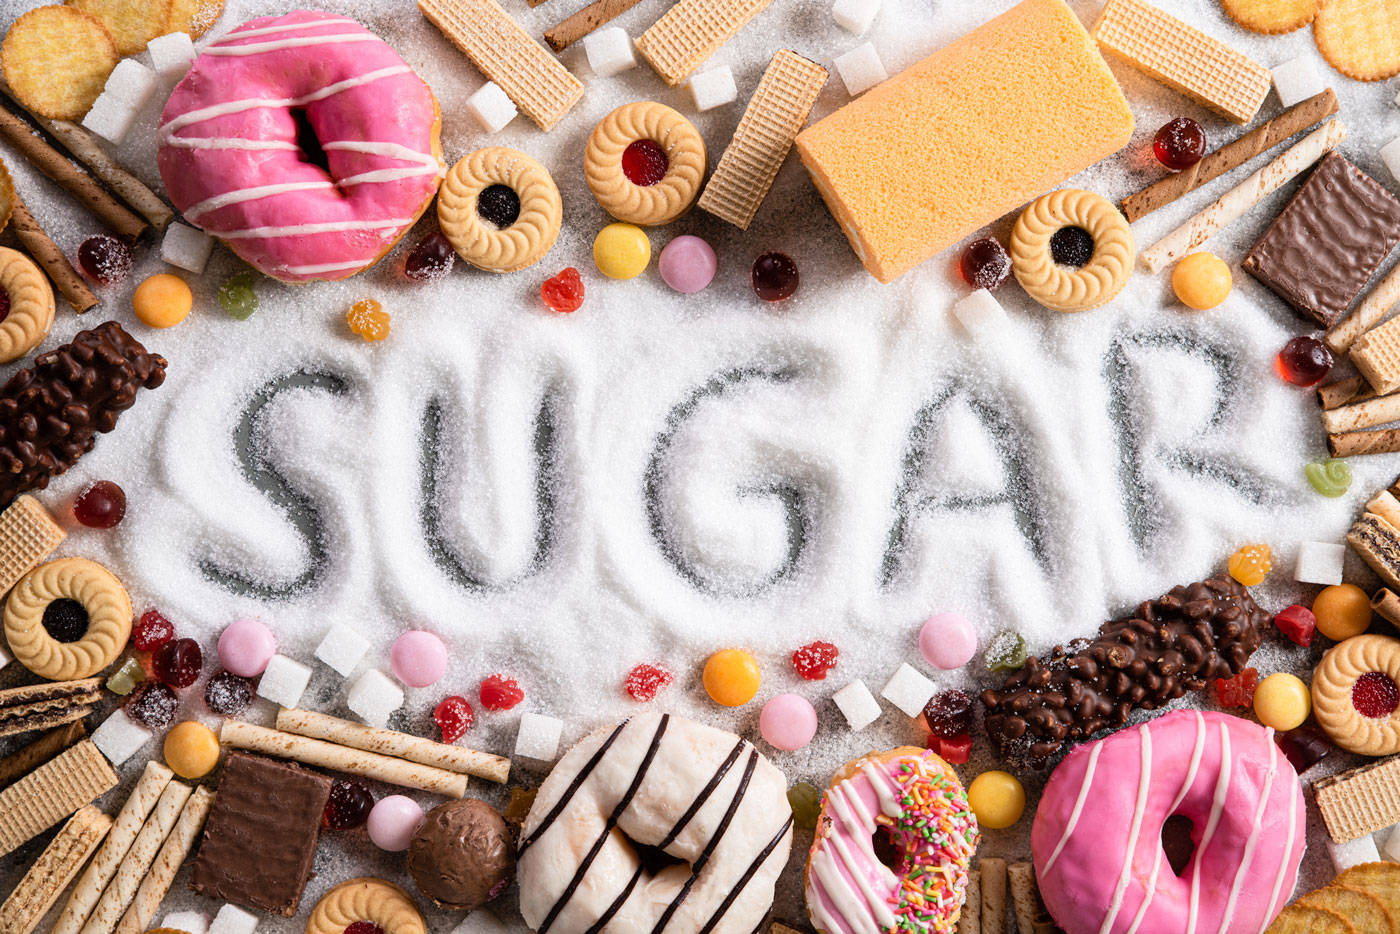 Fødevarer Med Meget Sukker afbilleder et forstørret billede af desserts skåret fra en buffet. Wallpaper